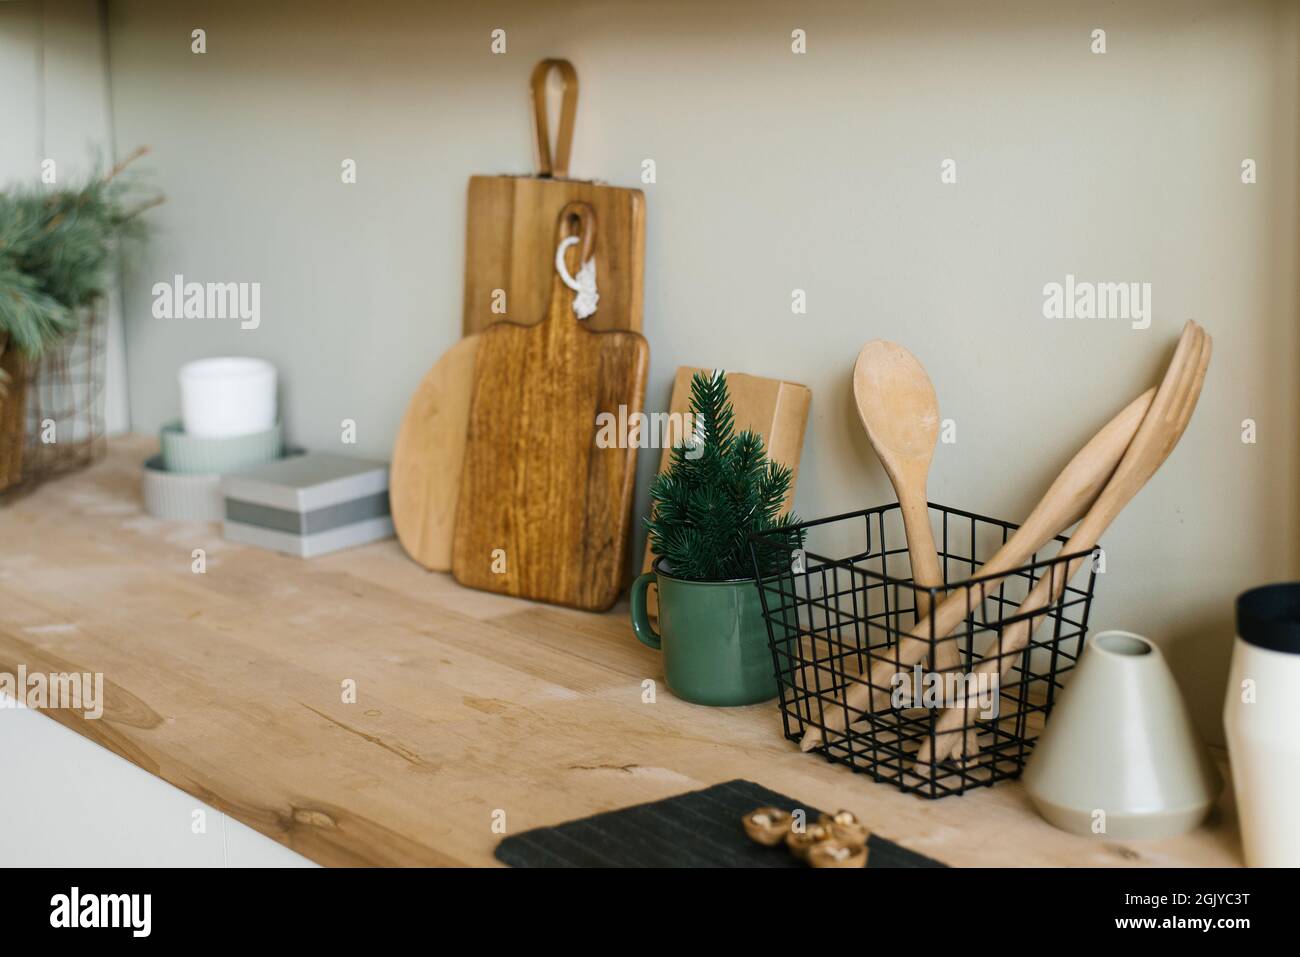 Küchenutensilien im skandinavischen Stil. Holzschneidebretter, Holzlöffel  und Schaufeln. Weihnachtliche Einrichtung Stockfotografie - Alamy